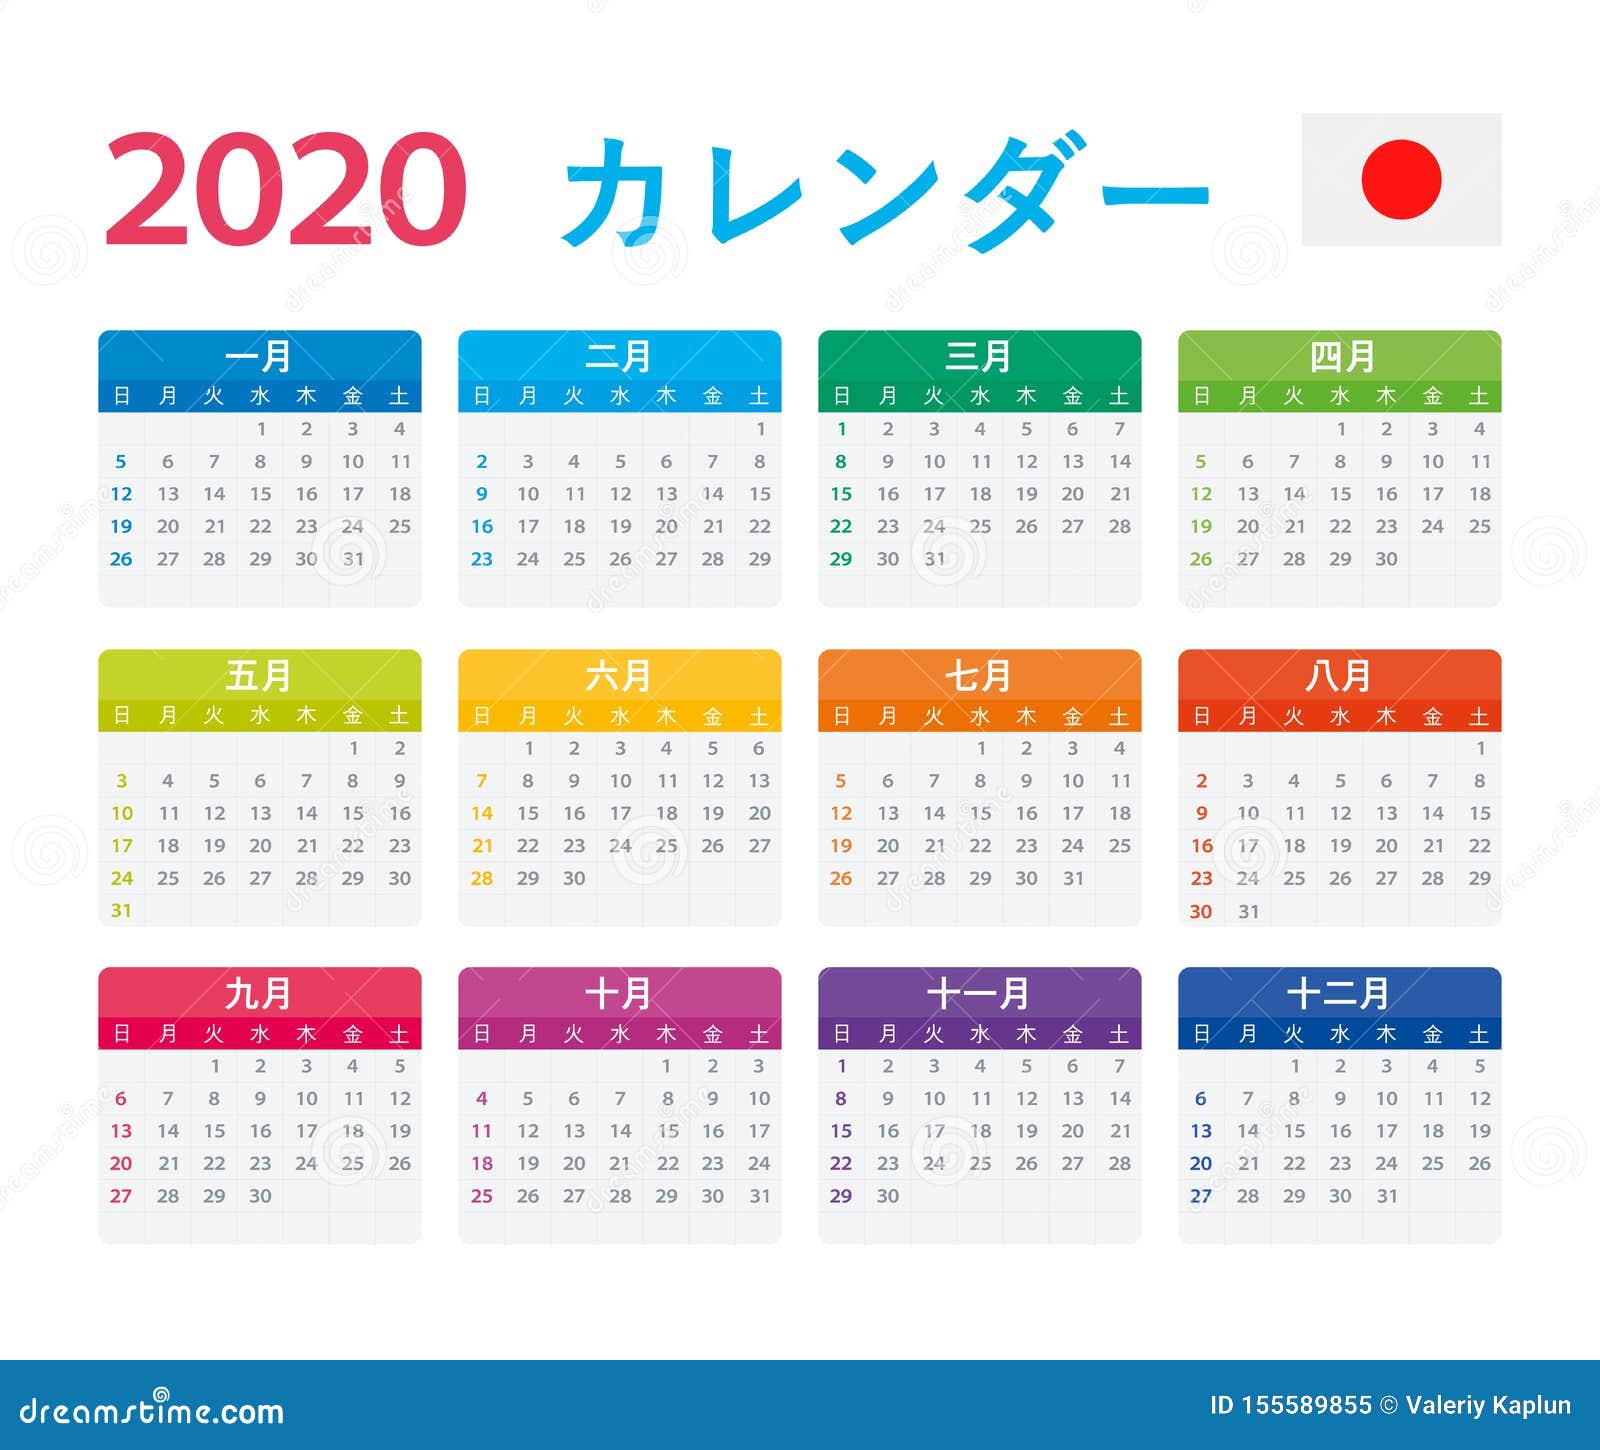 2020 In Japanese Calendar